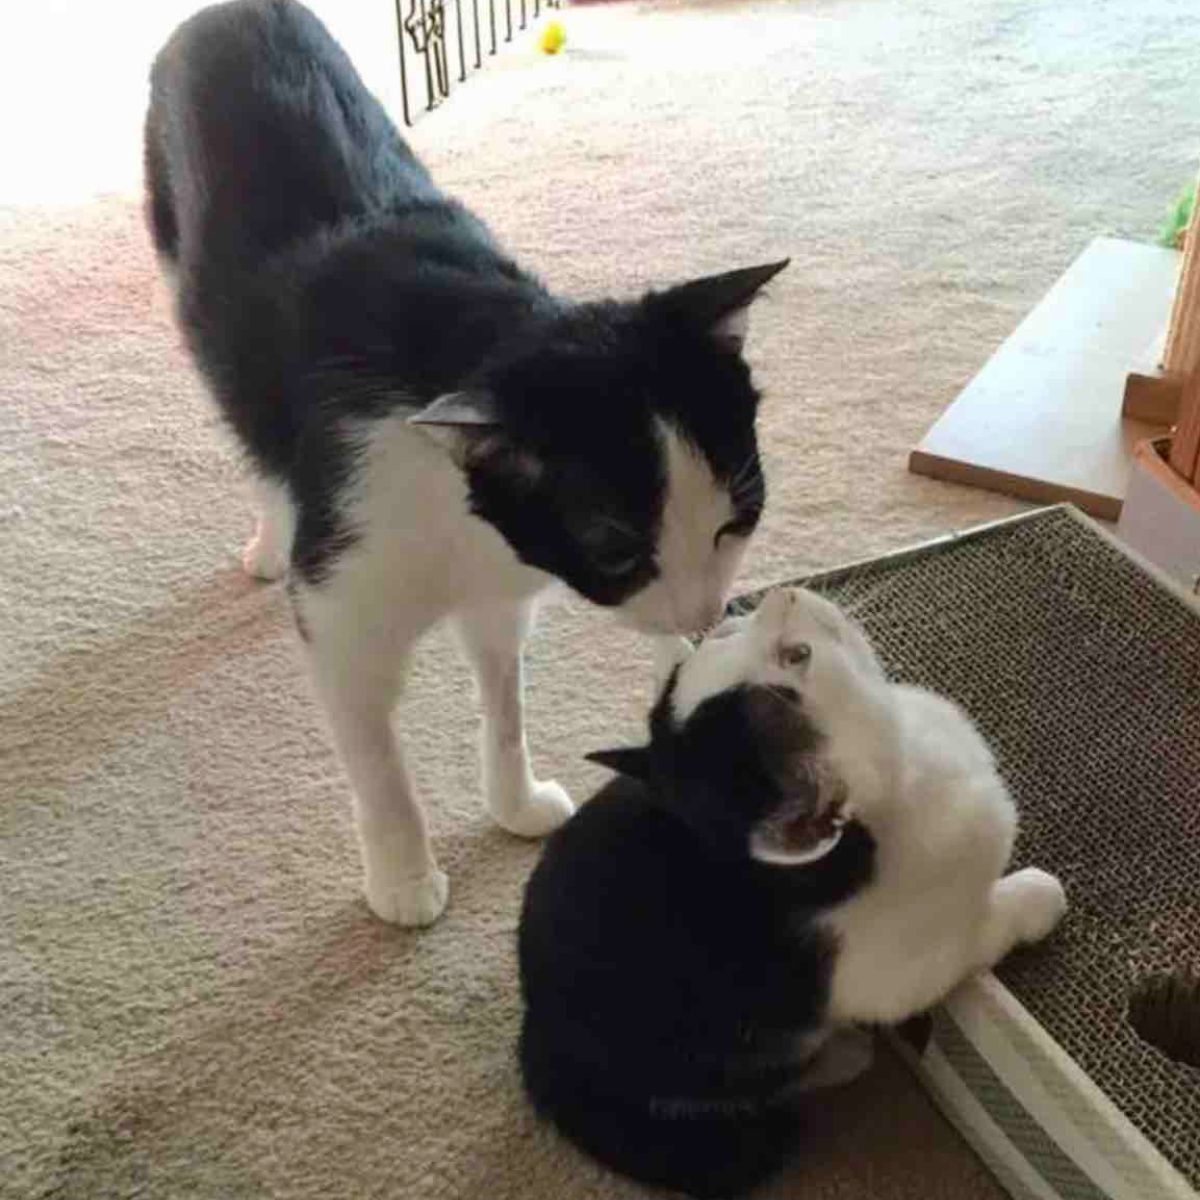 cat kissing kitten with weird eyes